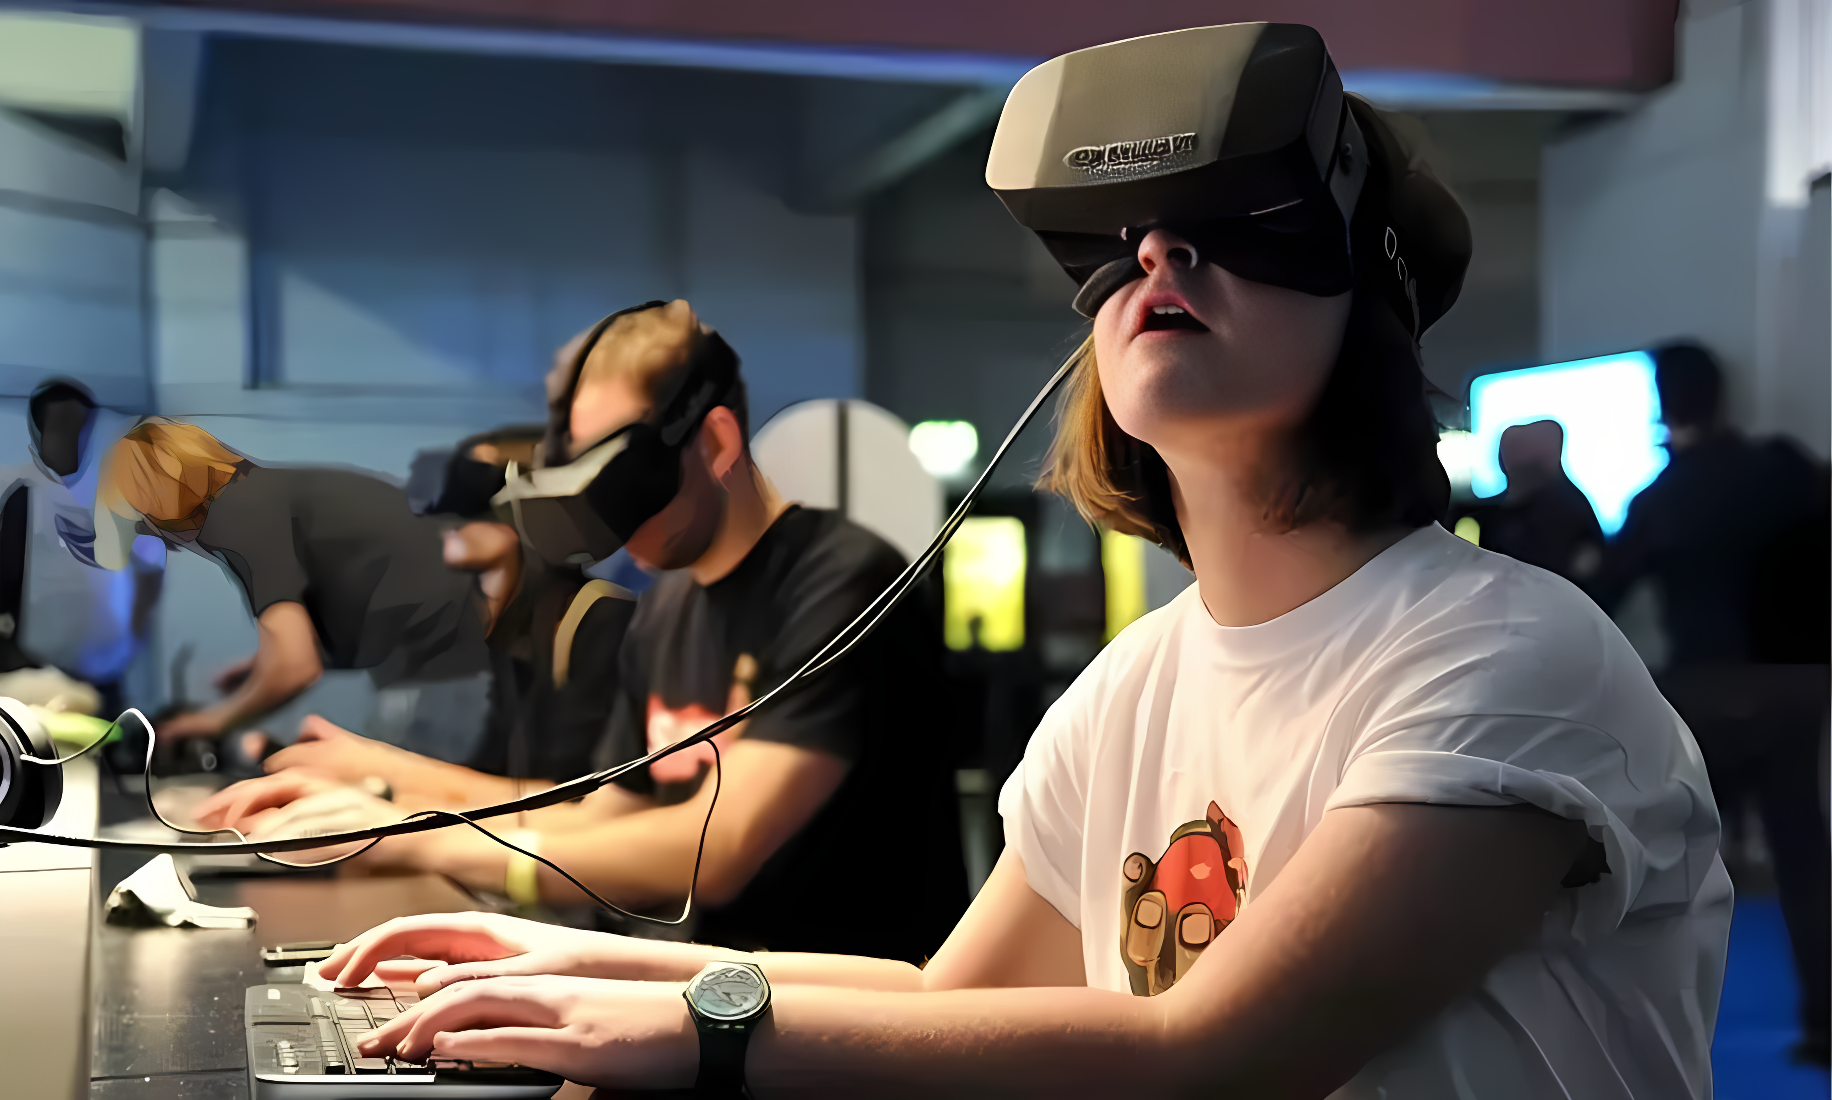 图片展示几人戴着虚拟现实头盔，专注体验VR技术。前台一人正操作电脑，背景有模糊的人影和蓝色光线。